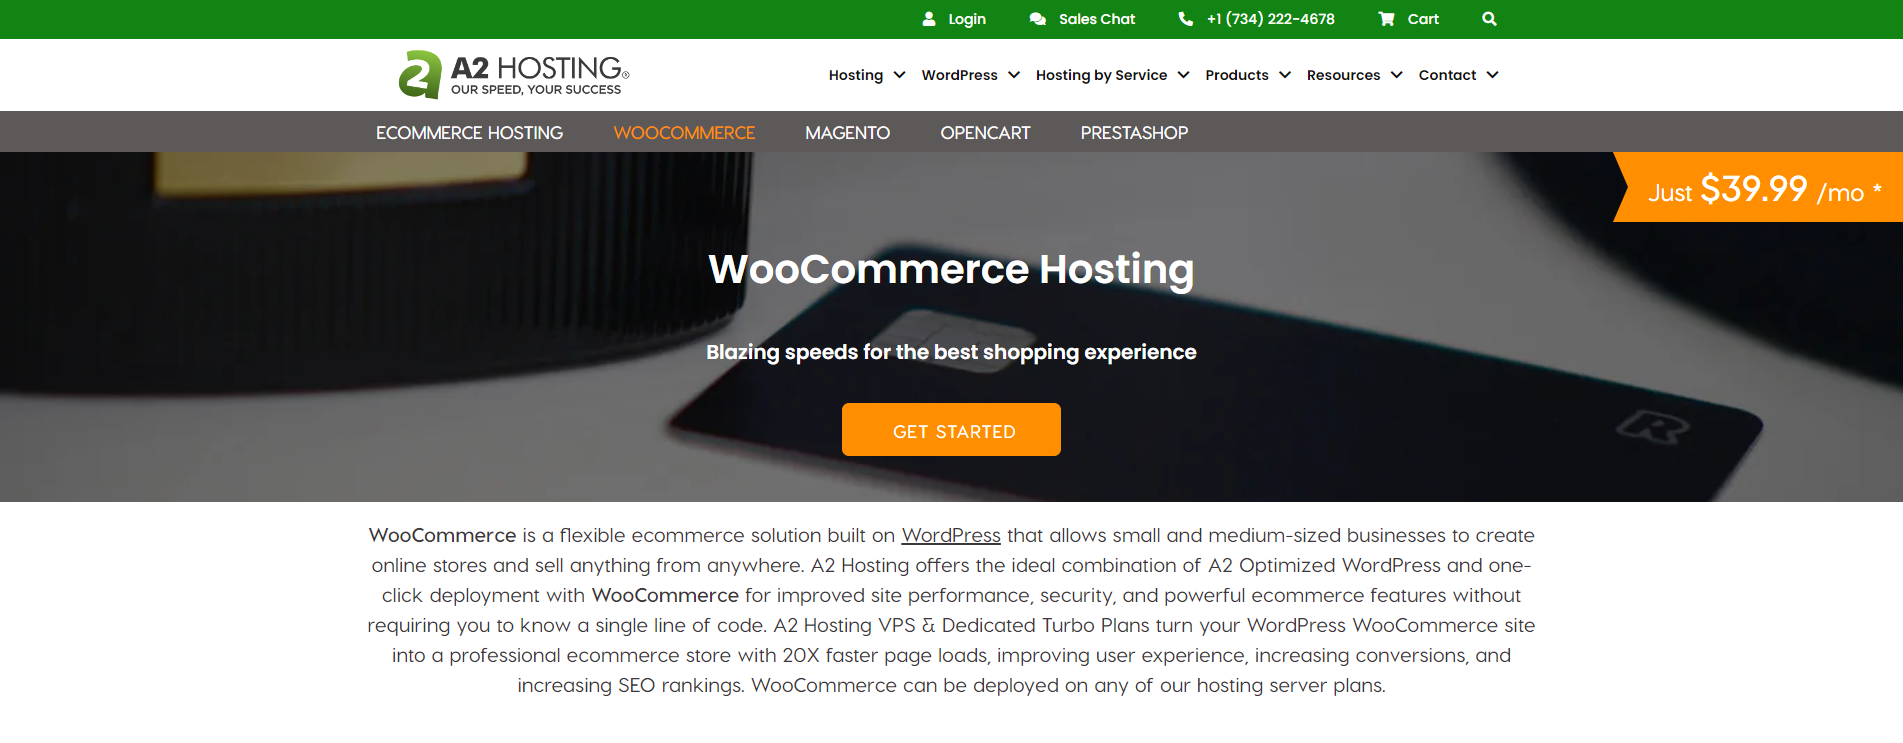 Woocommerce Hosting Provider 4